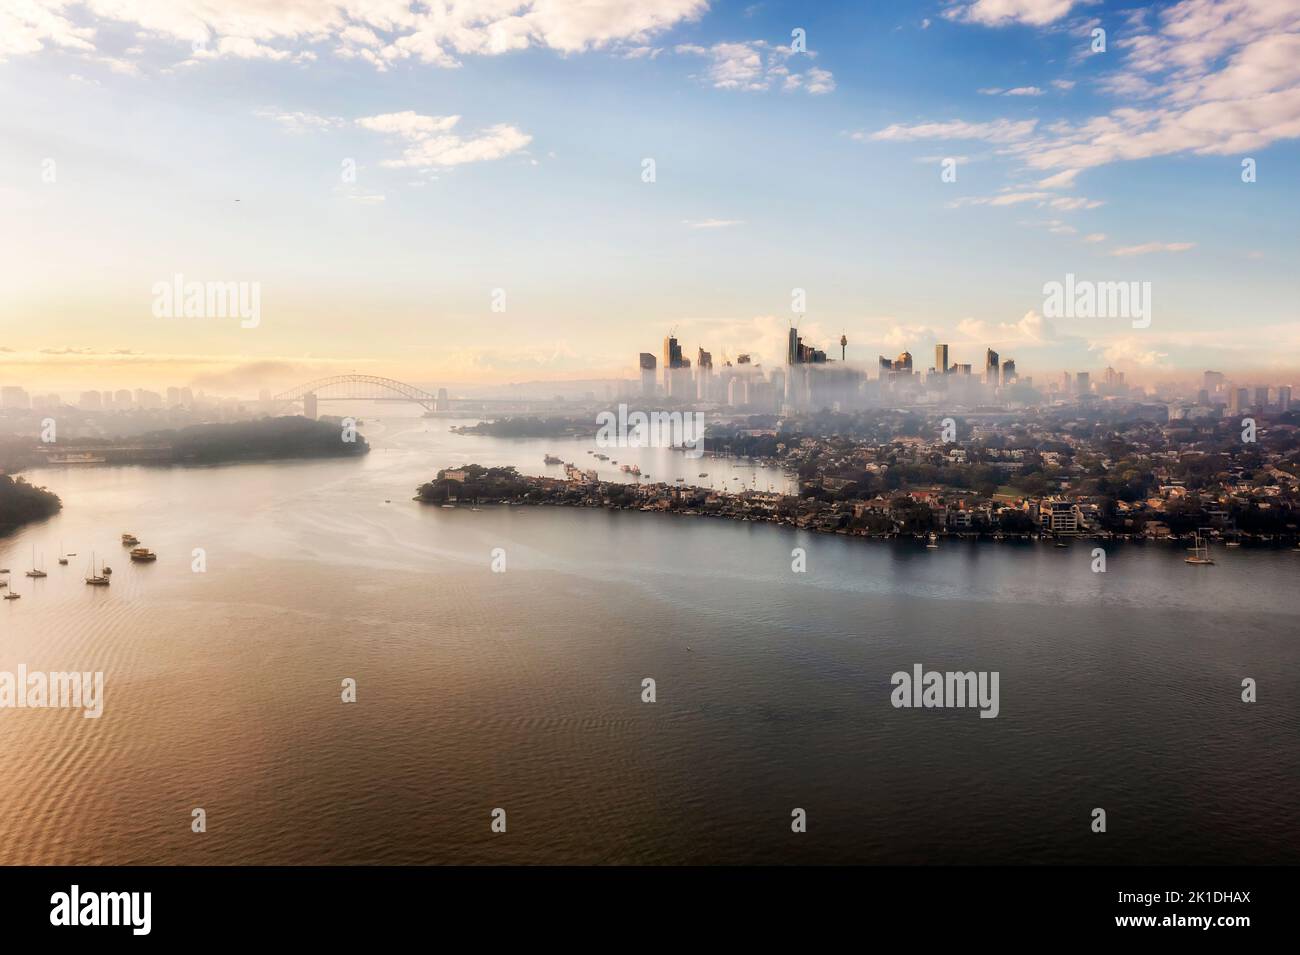 Il paesaggio urbano del fiume Parramatta al porto di Sydney e i punti di riferimento architettonici dello skyline del CBD della città in un'oscura alba. Foto Stock